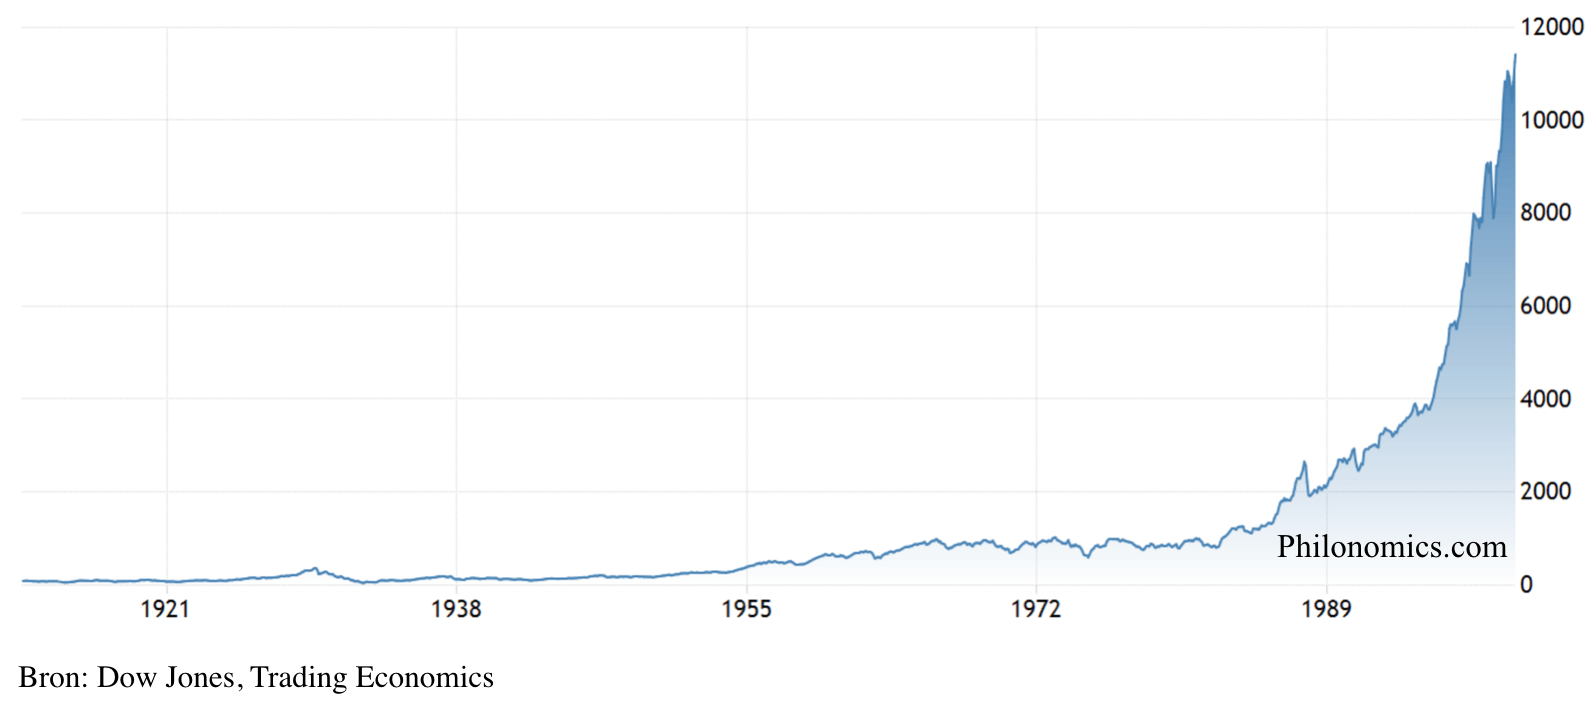 Dow Jones Industrial Average (1912-2000)